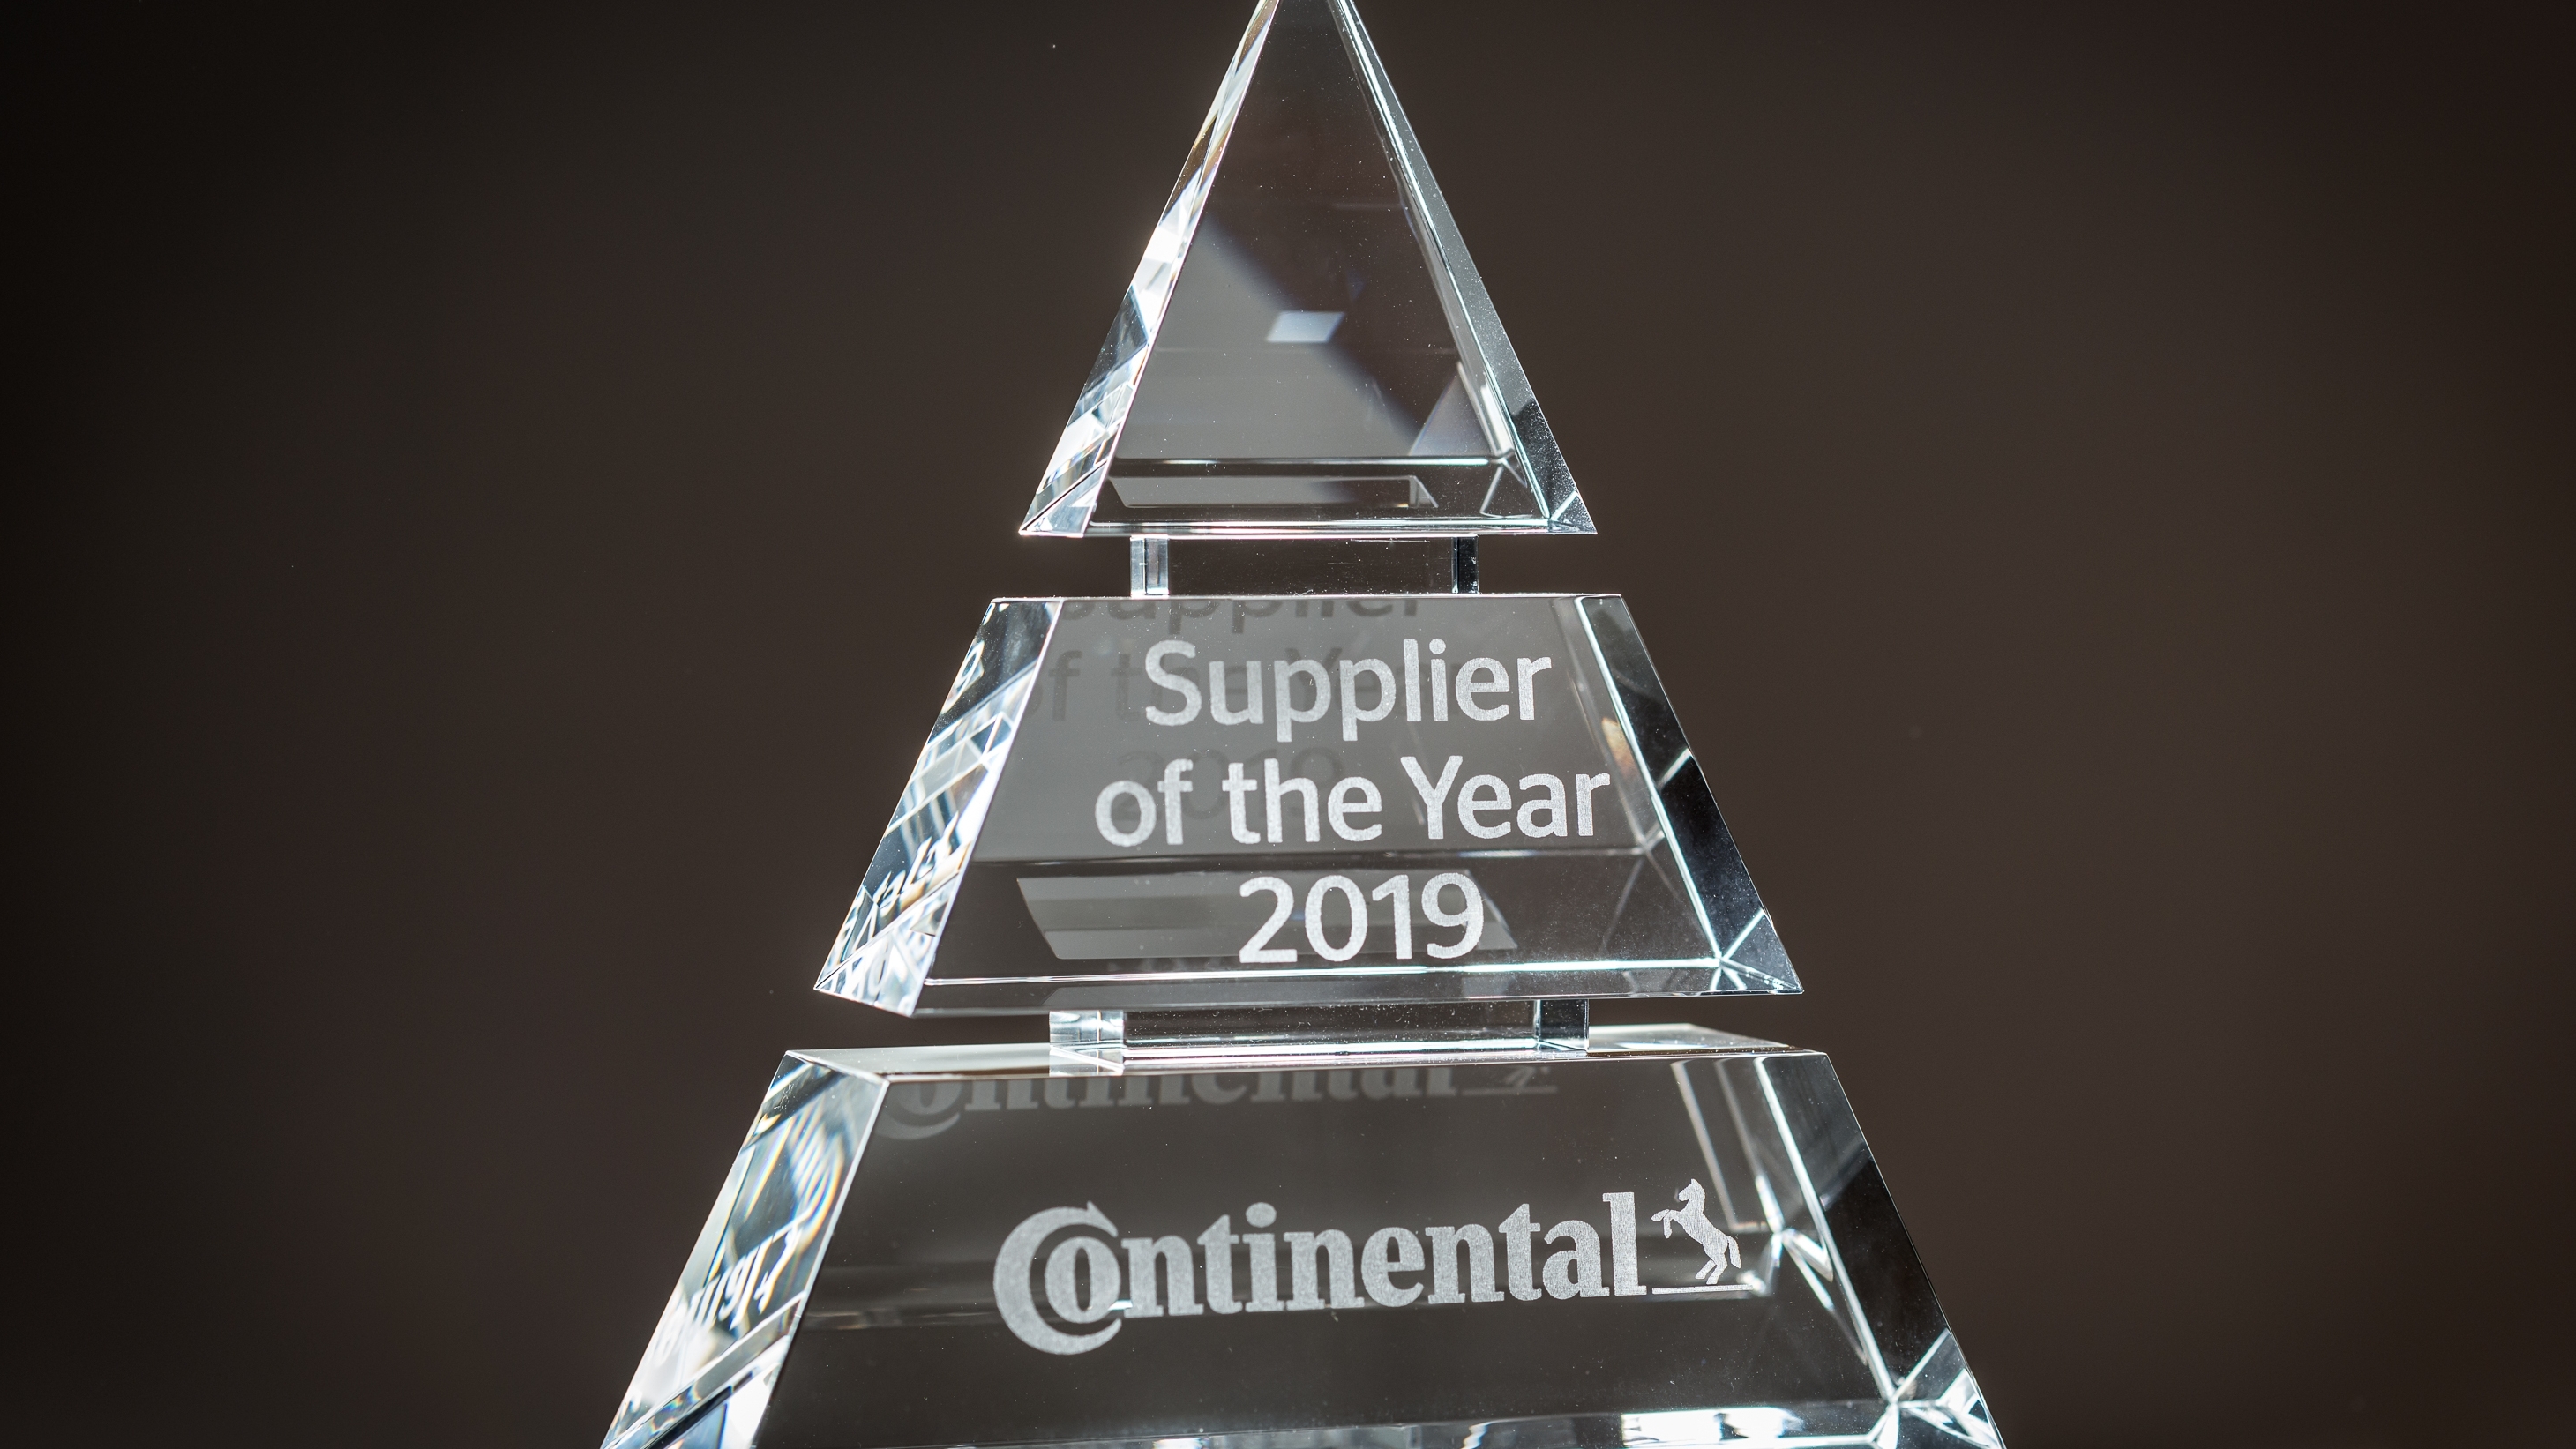 Continental zeichnet ROHM Semiconductor mit "Supplier of the Year 2019 Award" aus